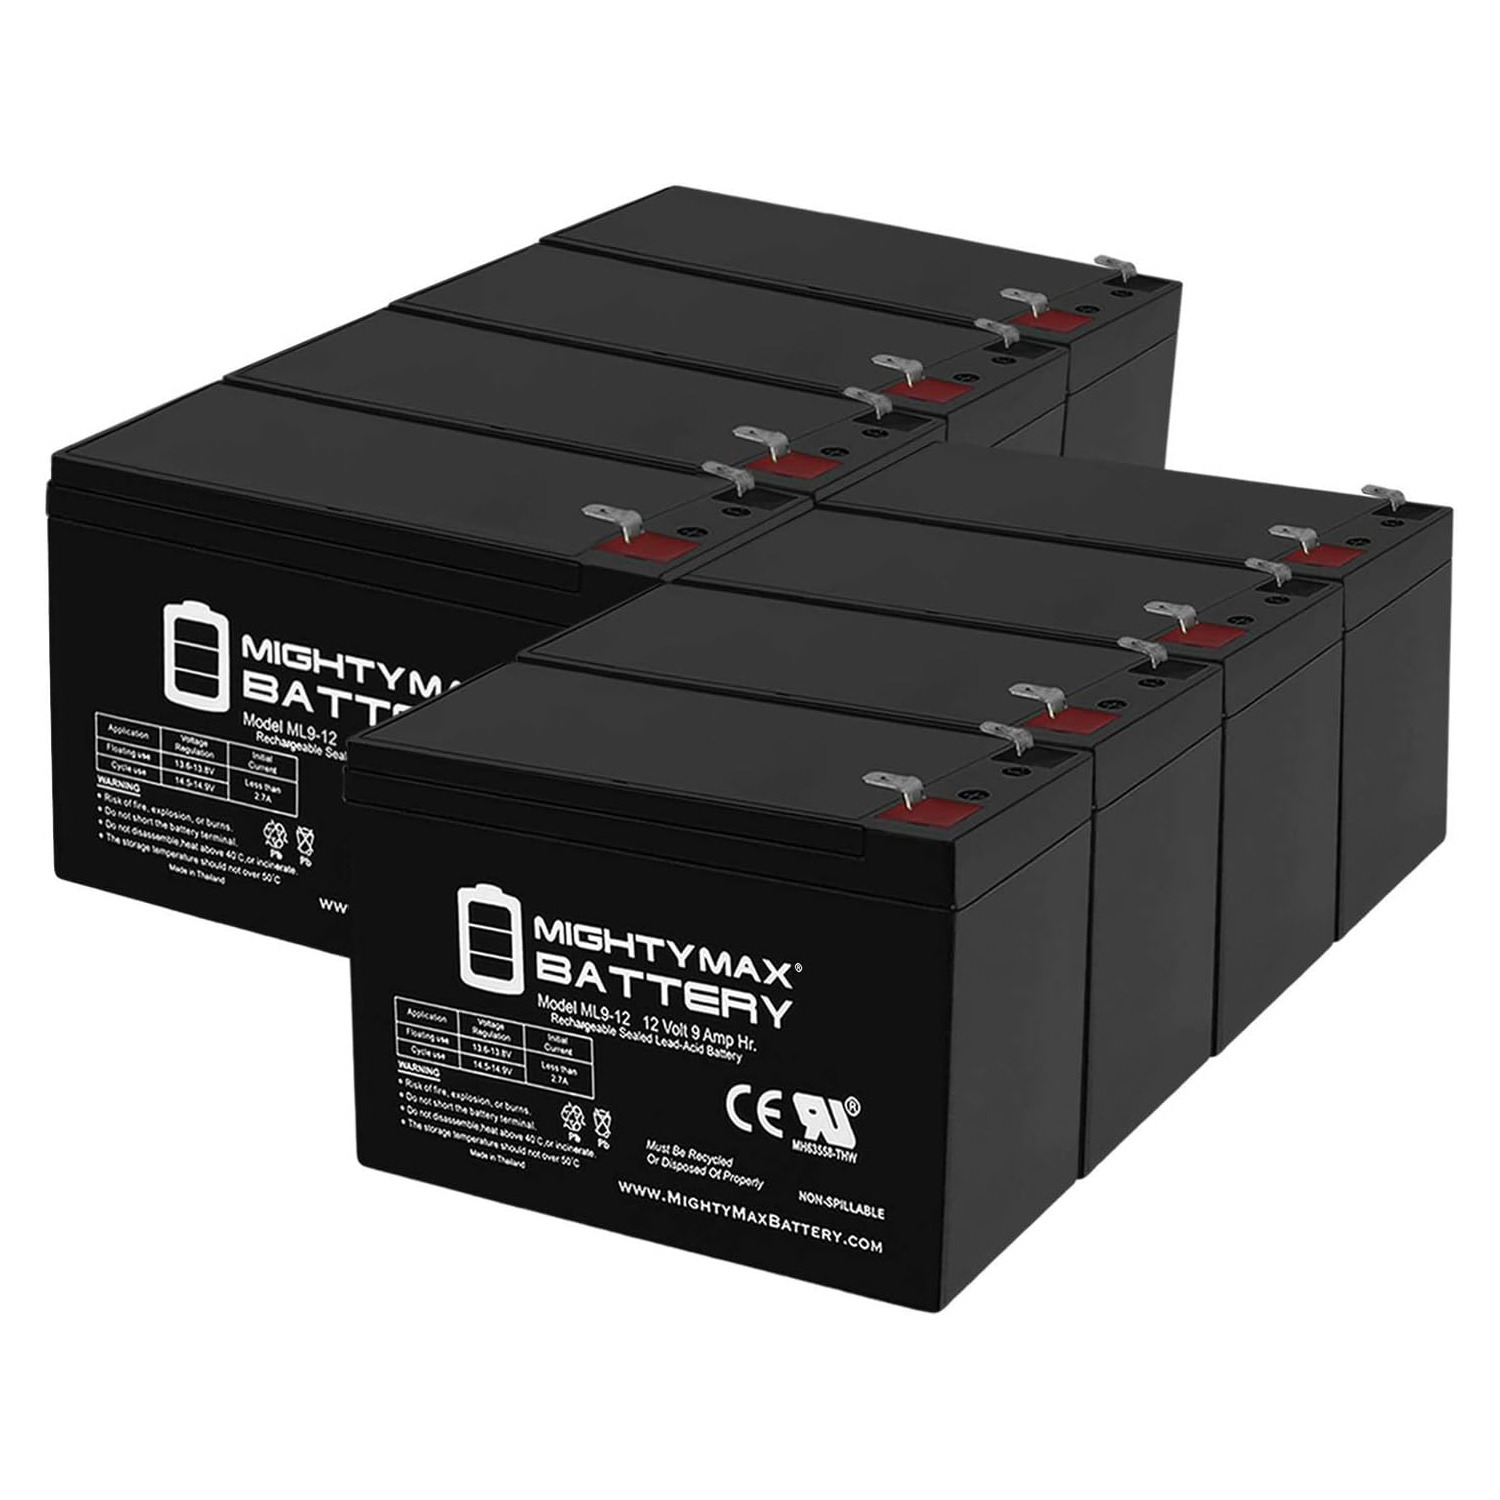 Altronix AL125ULX 12V, 9Ah Lead Acid Battery - 8 Pack